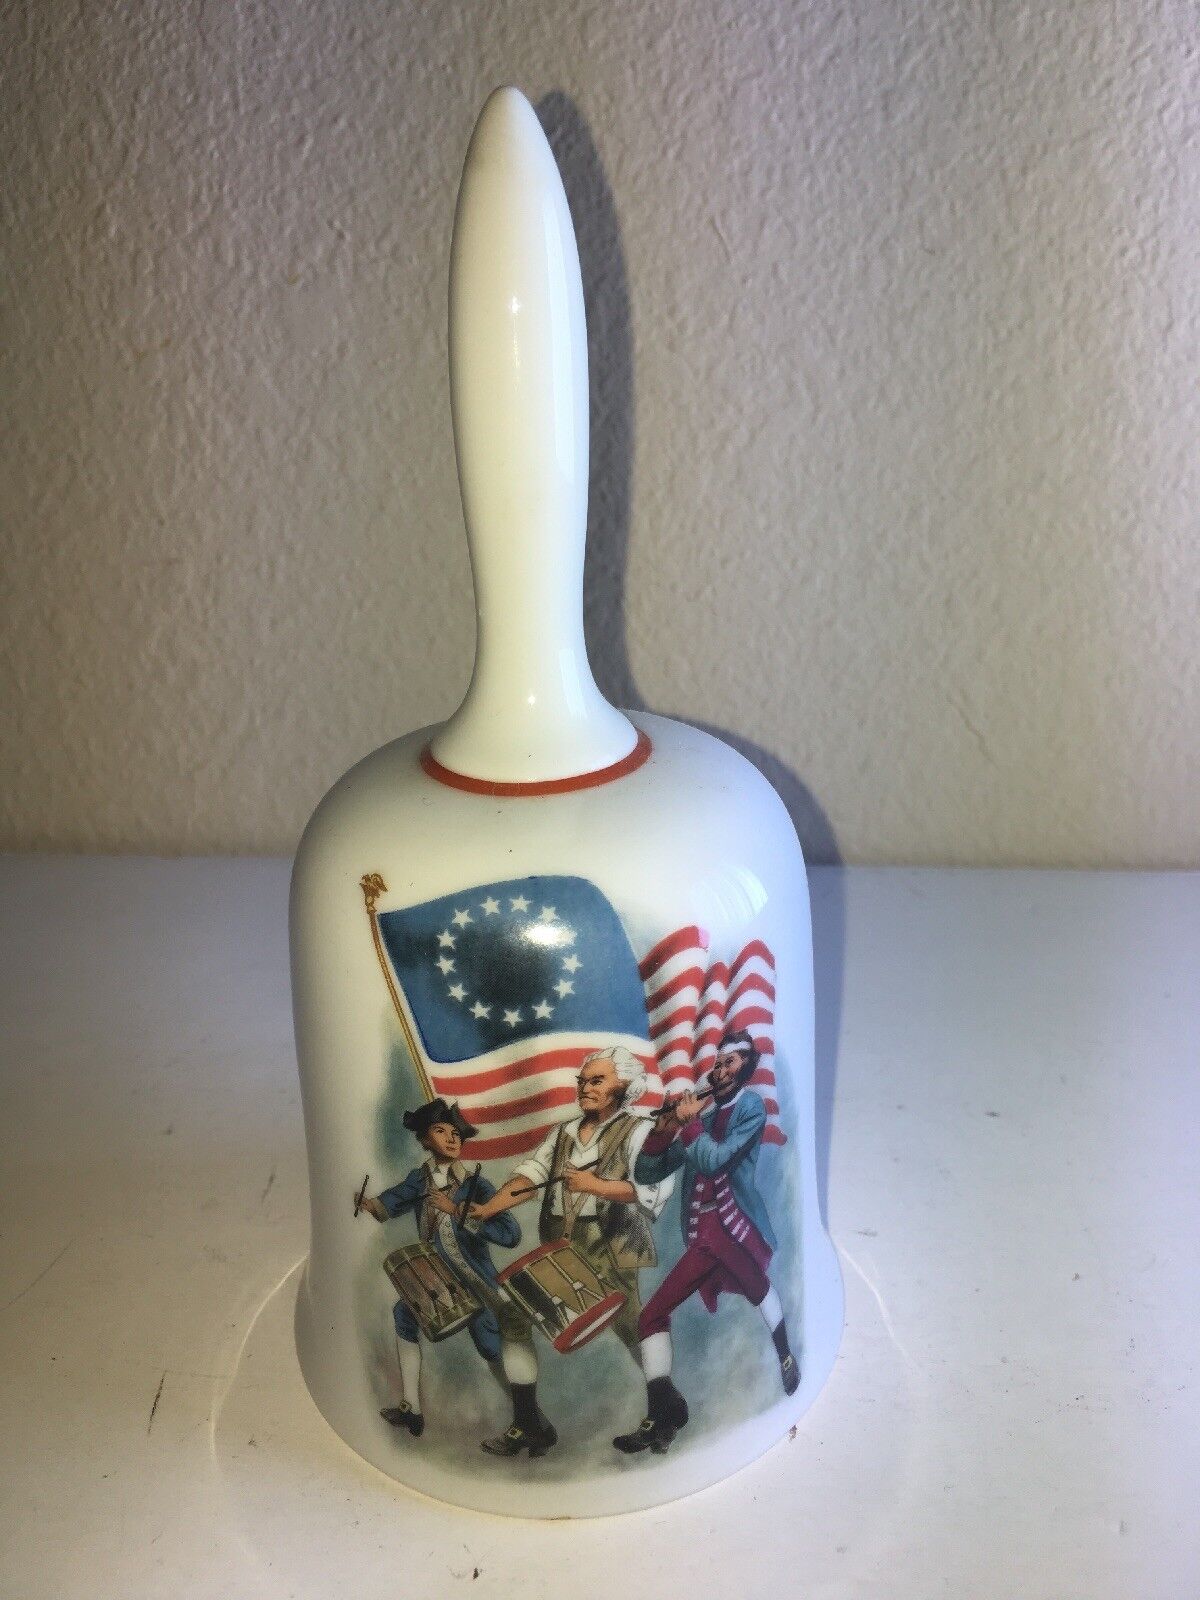 Spirit of ‘76 Bicentennial Bell by Danbury Mint